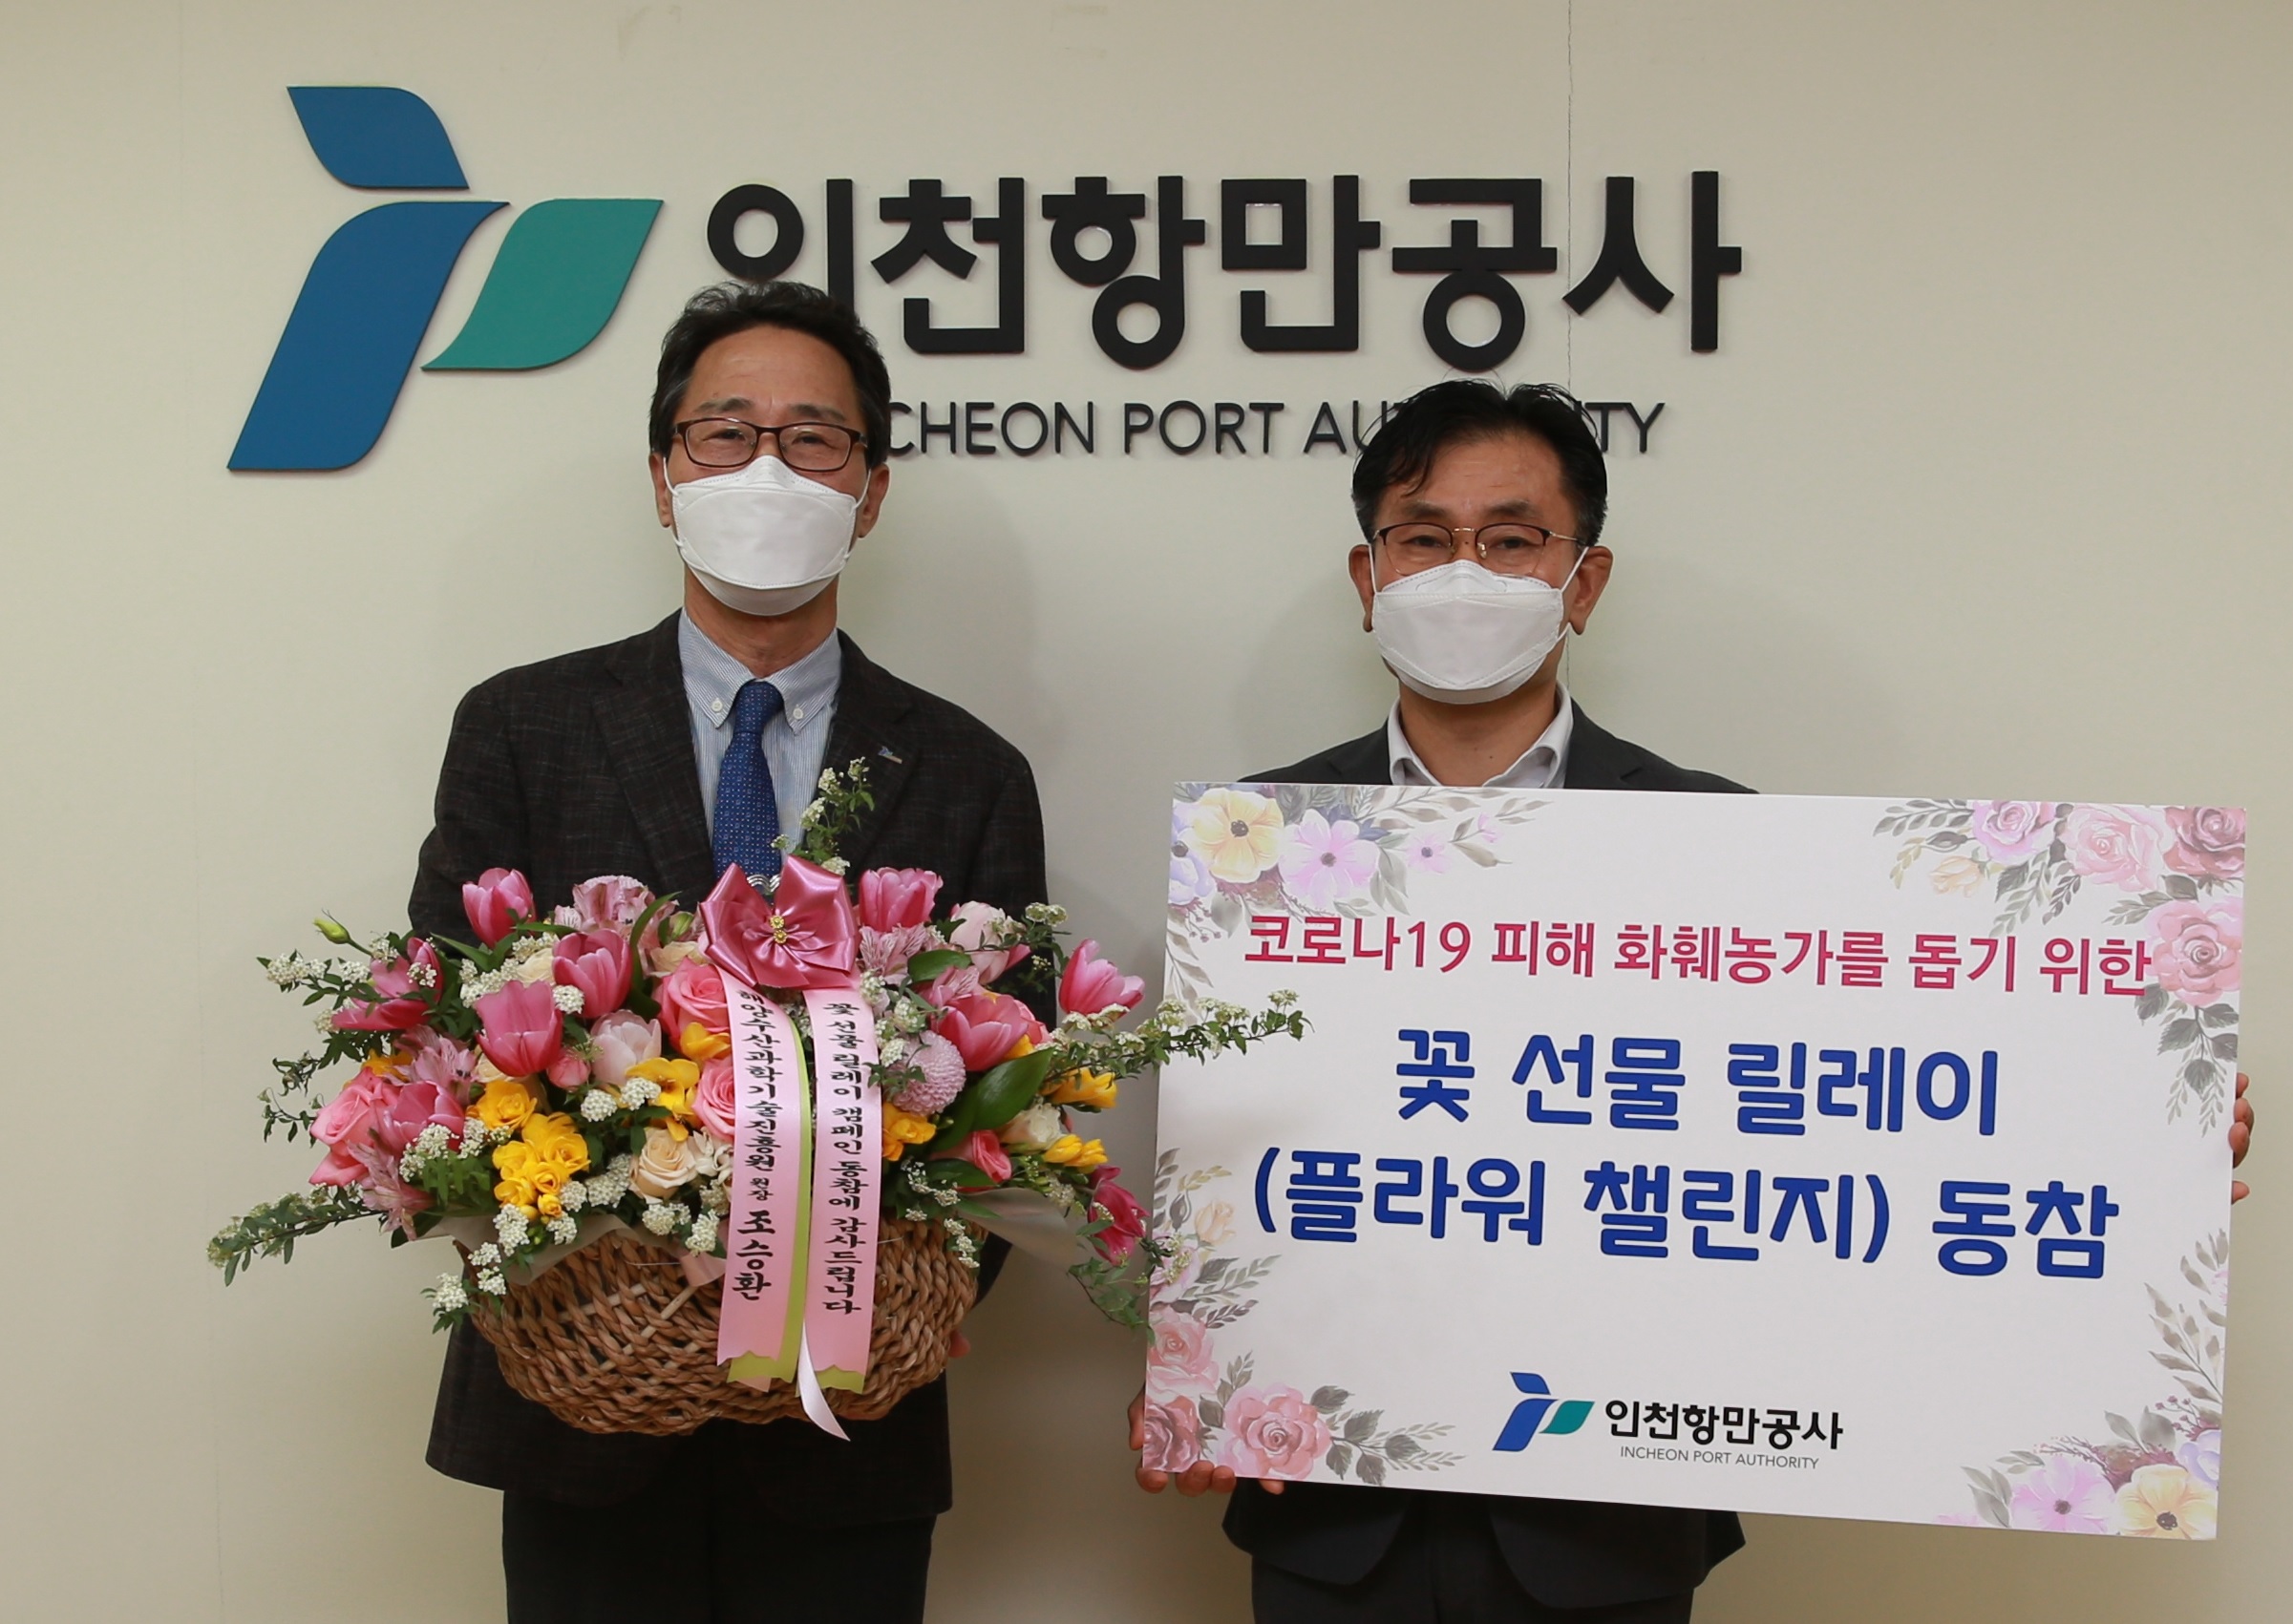 최준욱 인천항만공사 사장이 꽃 선물 릴레이에 참여하고 있다. 